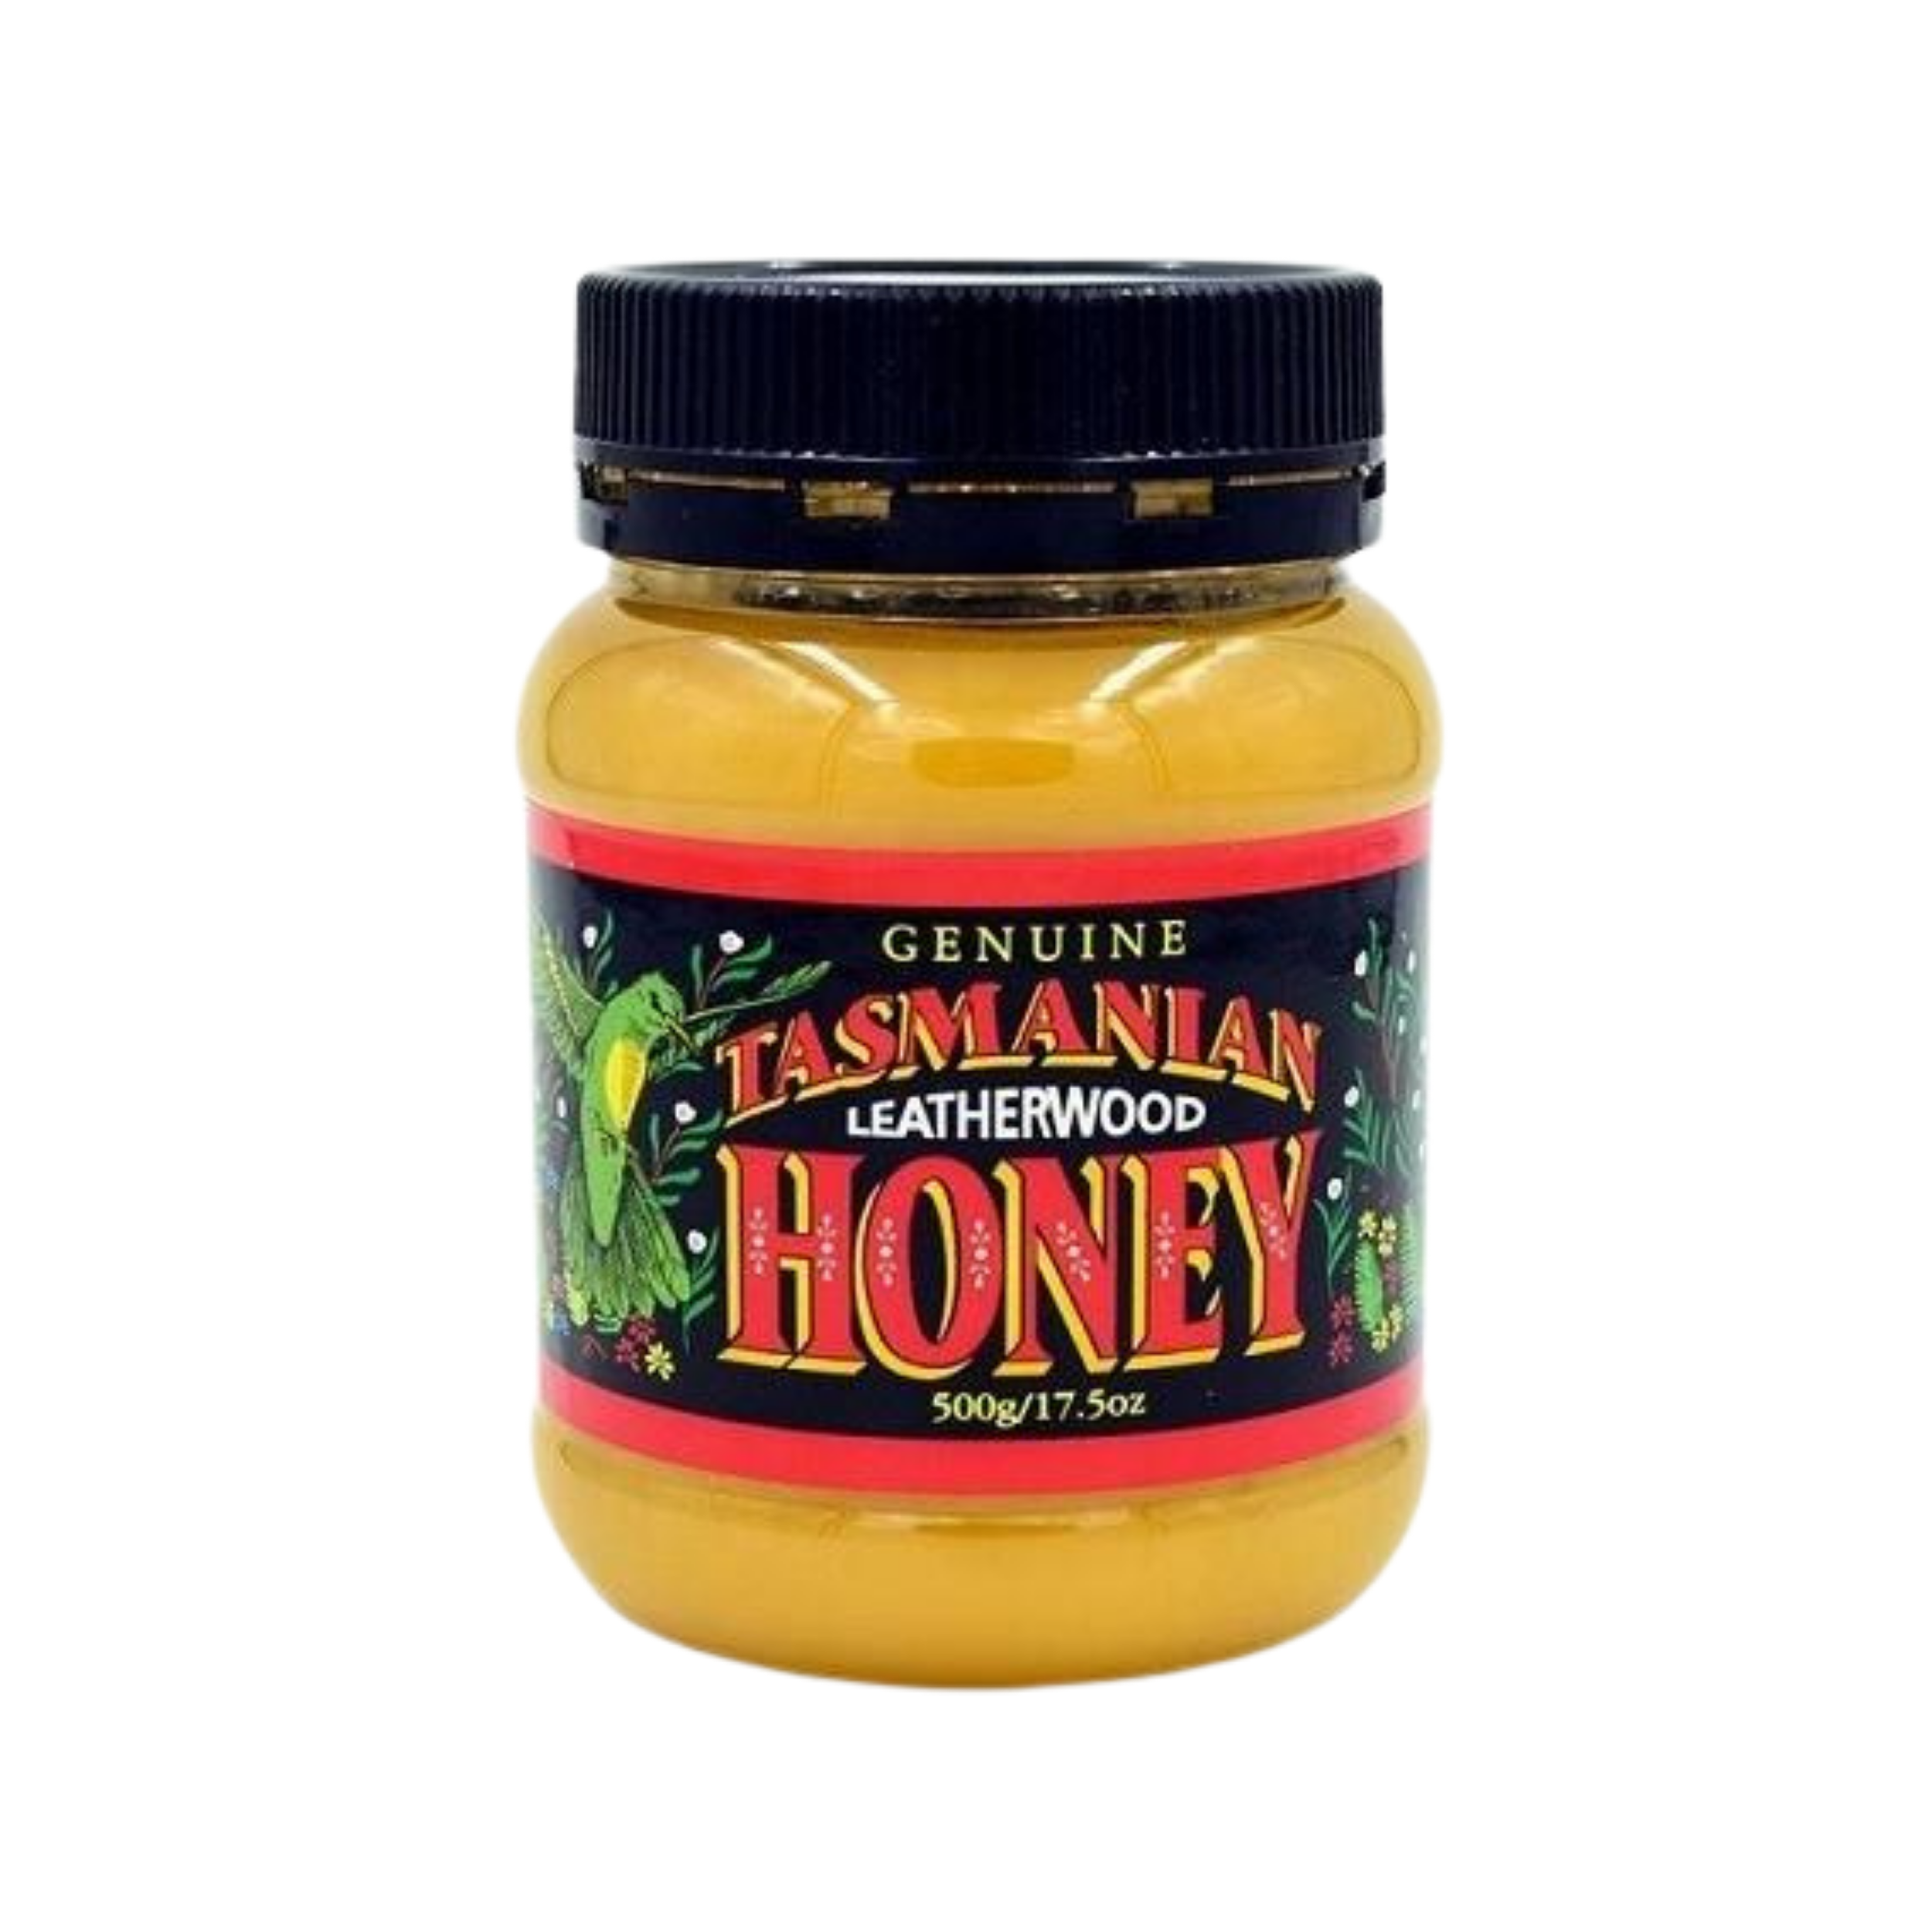 Tasmanian Leatherwood Honey 500g Jar